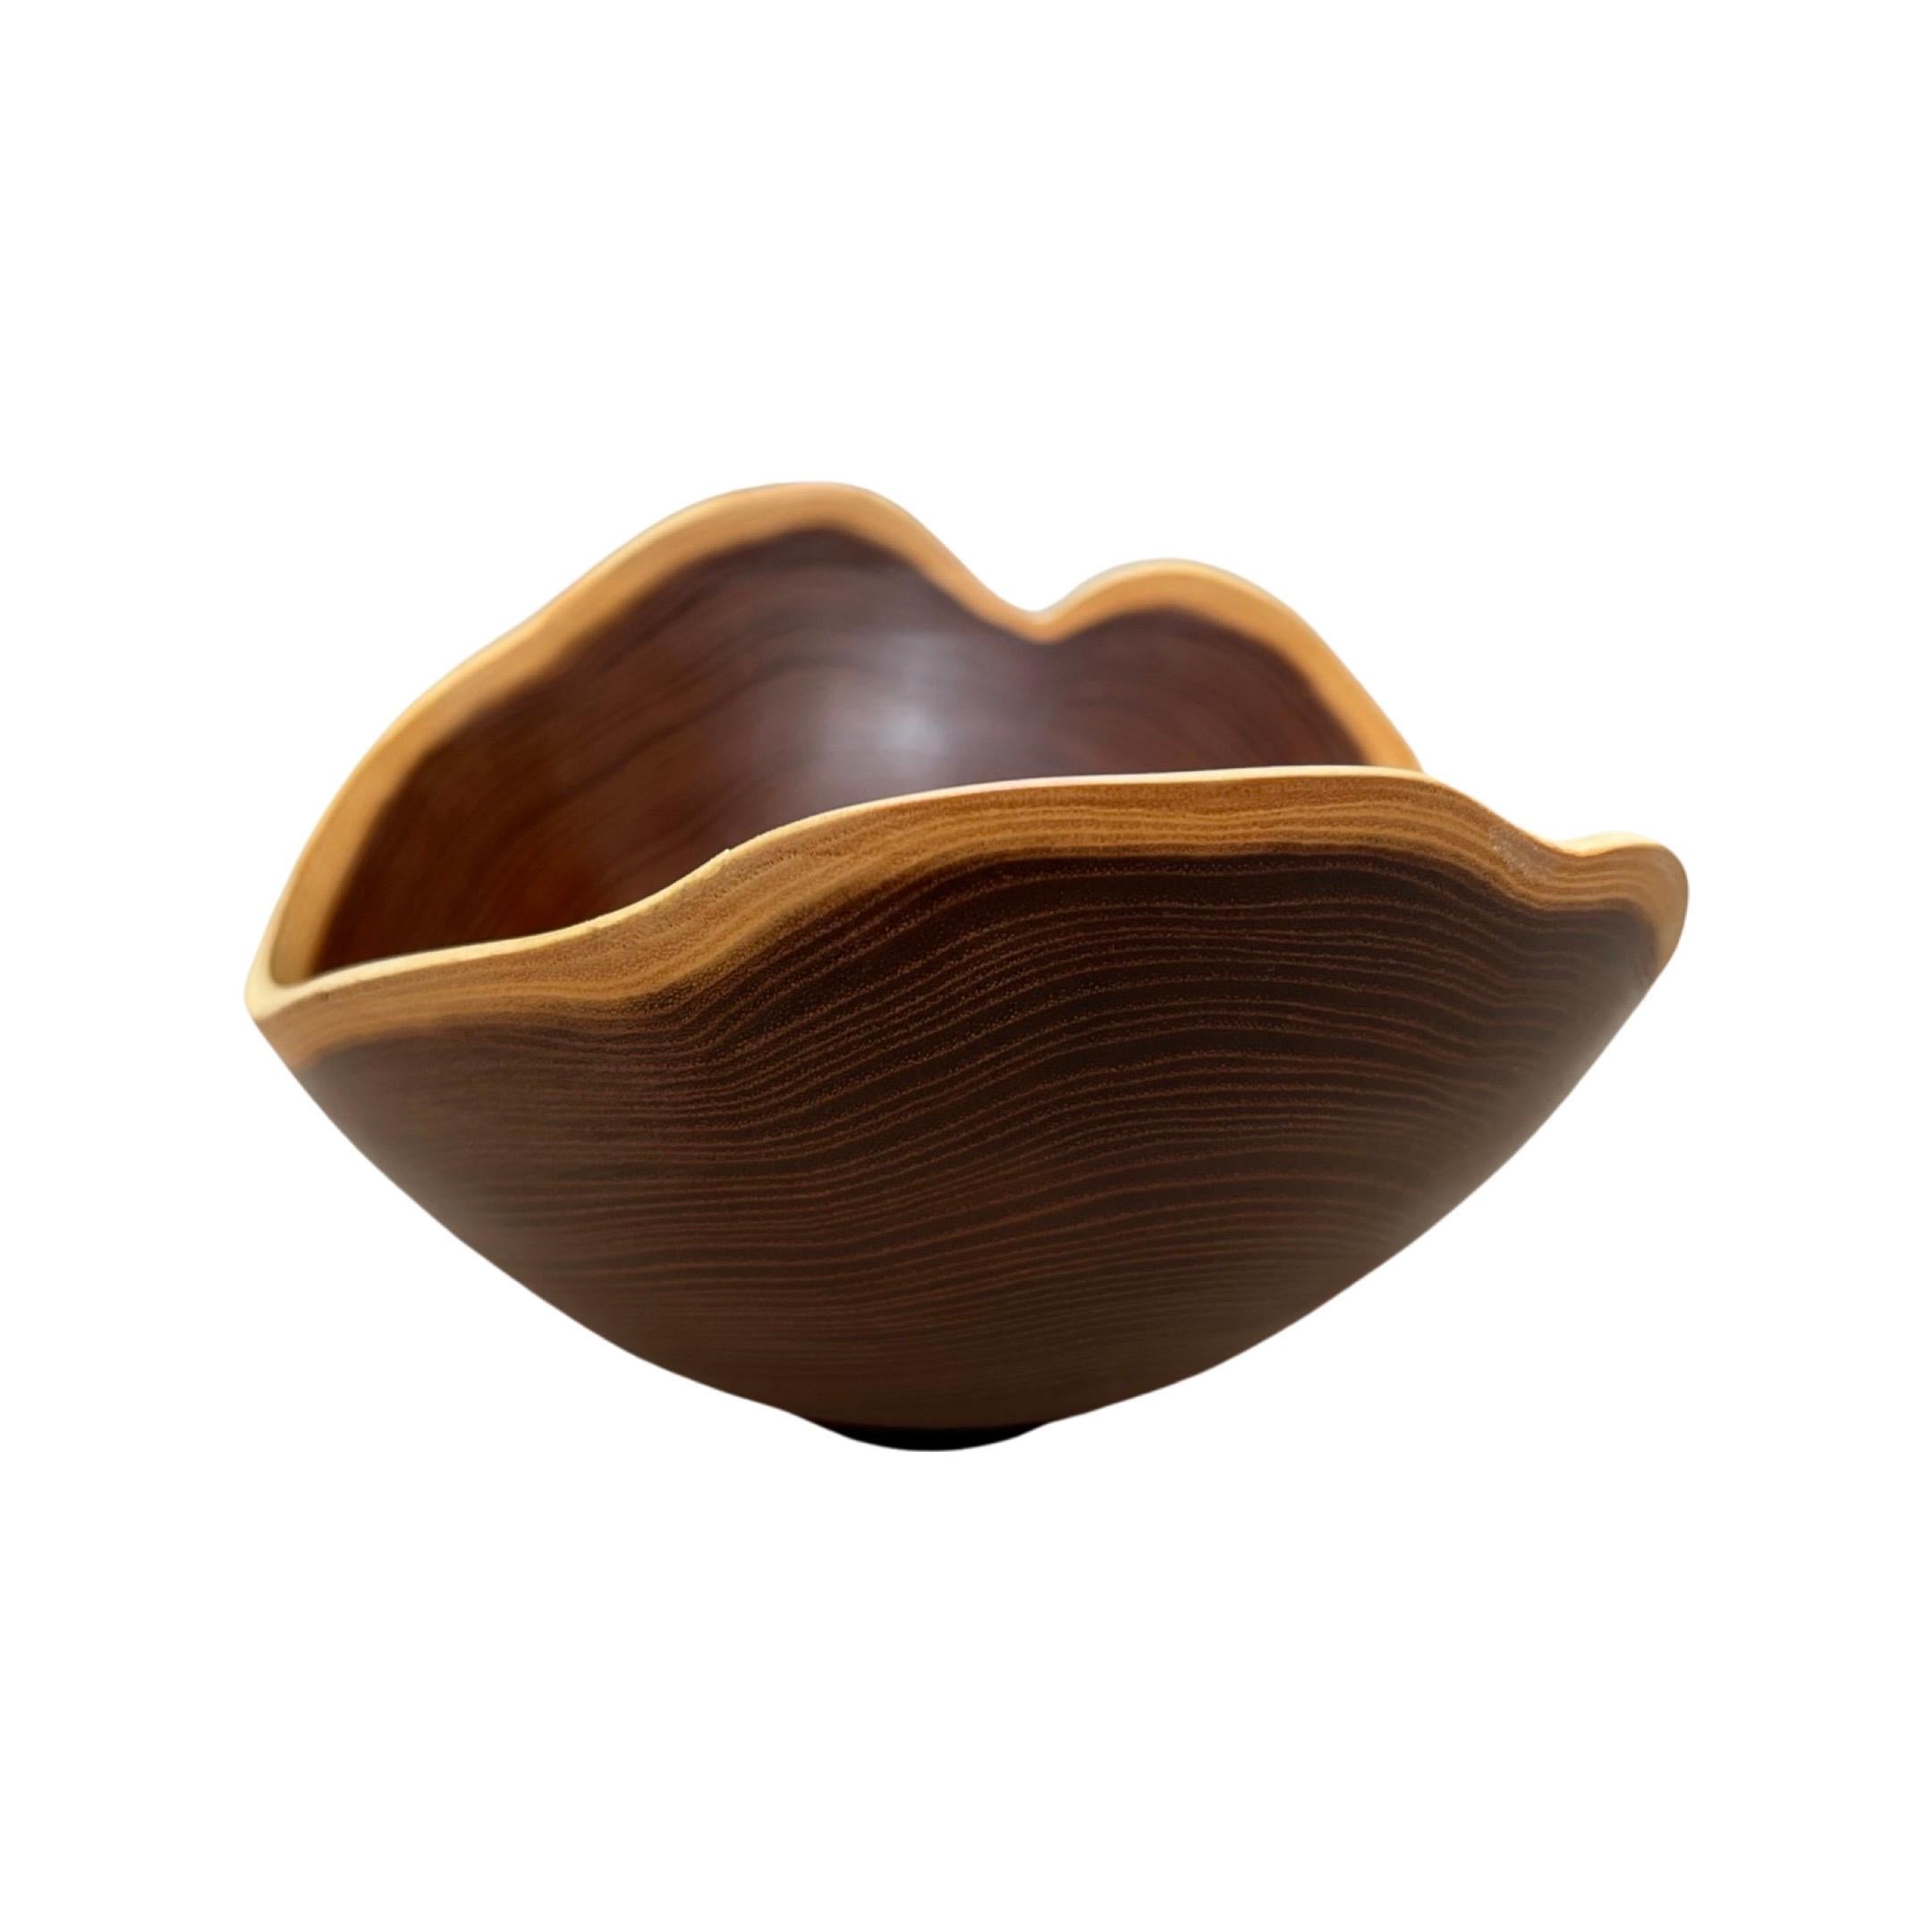 Contemporary William Rubenstein Sculptural Osage Orange Wood Bowl